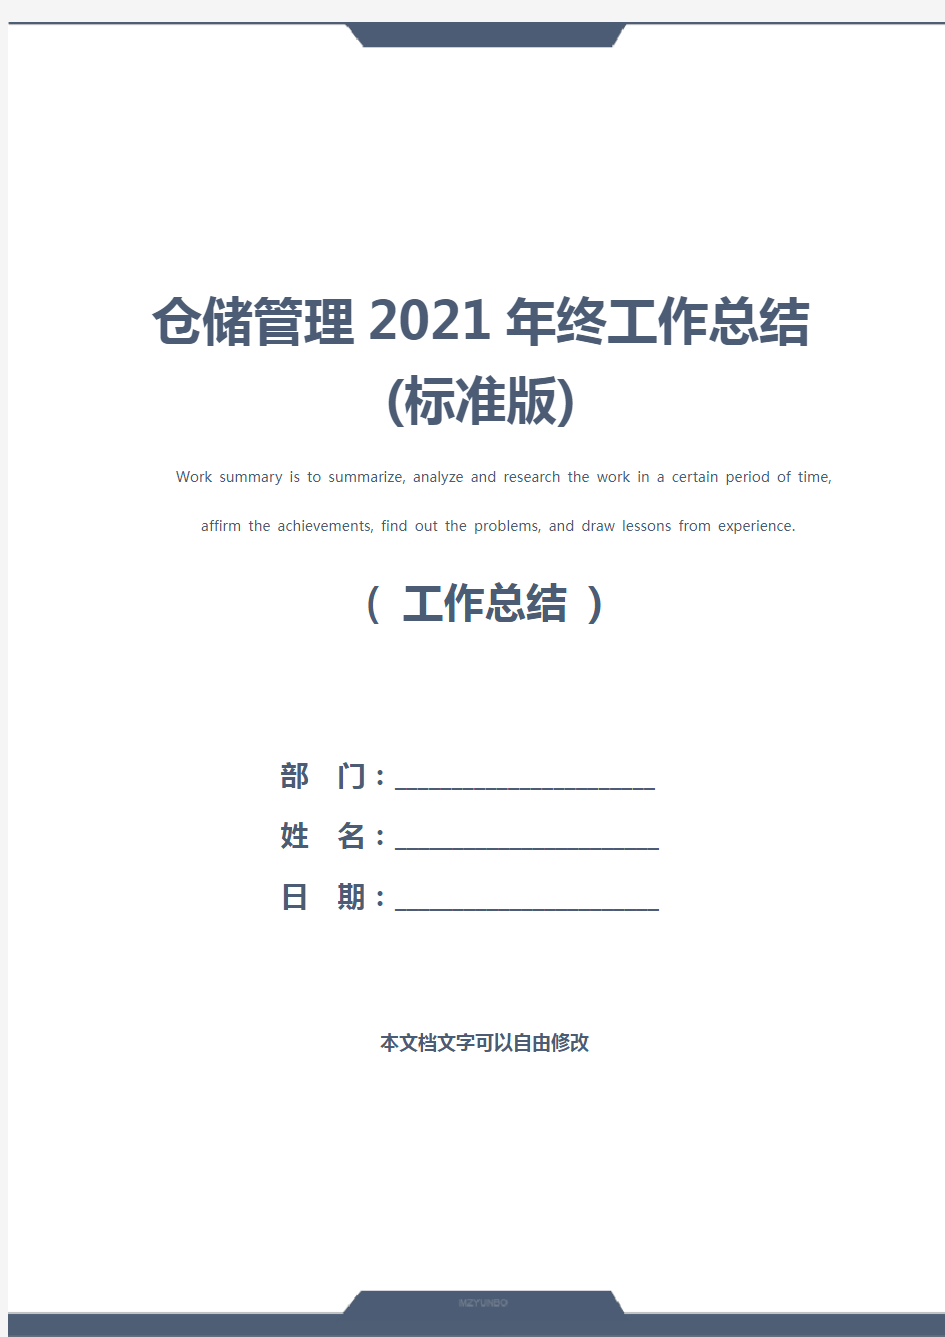 仓储管理2021年终工作总结(标准版)